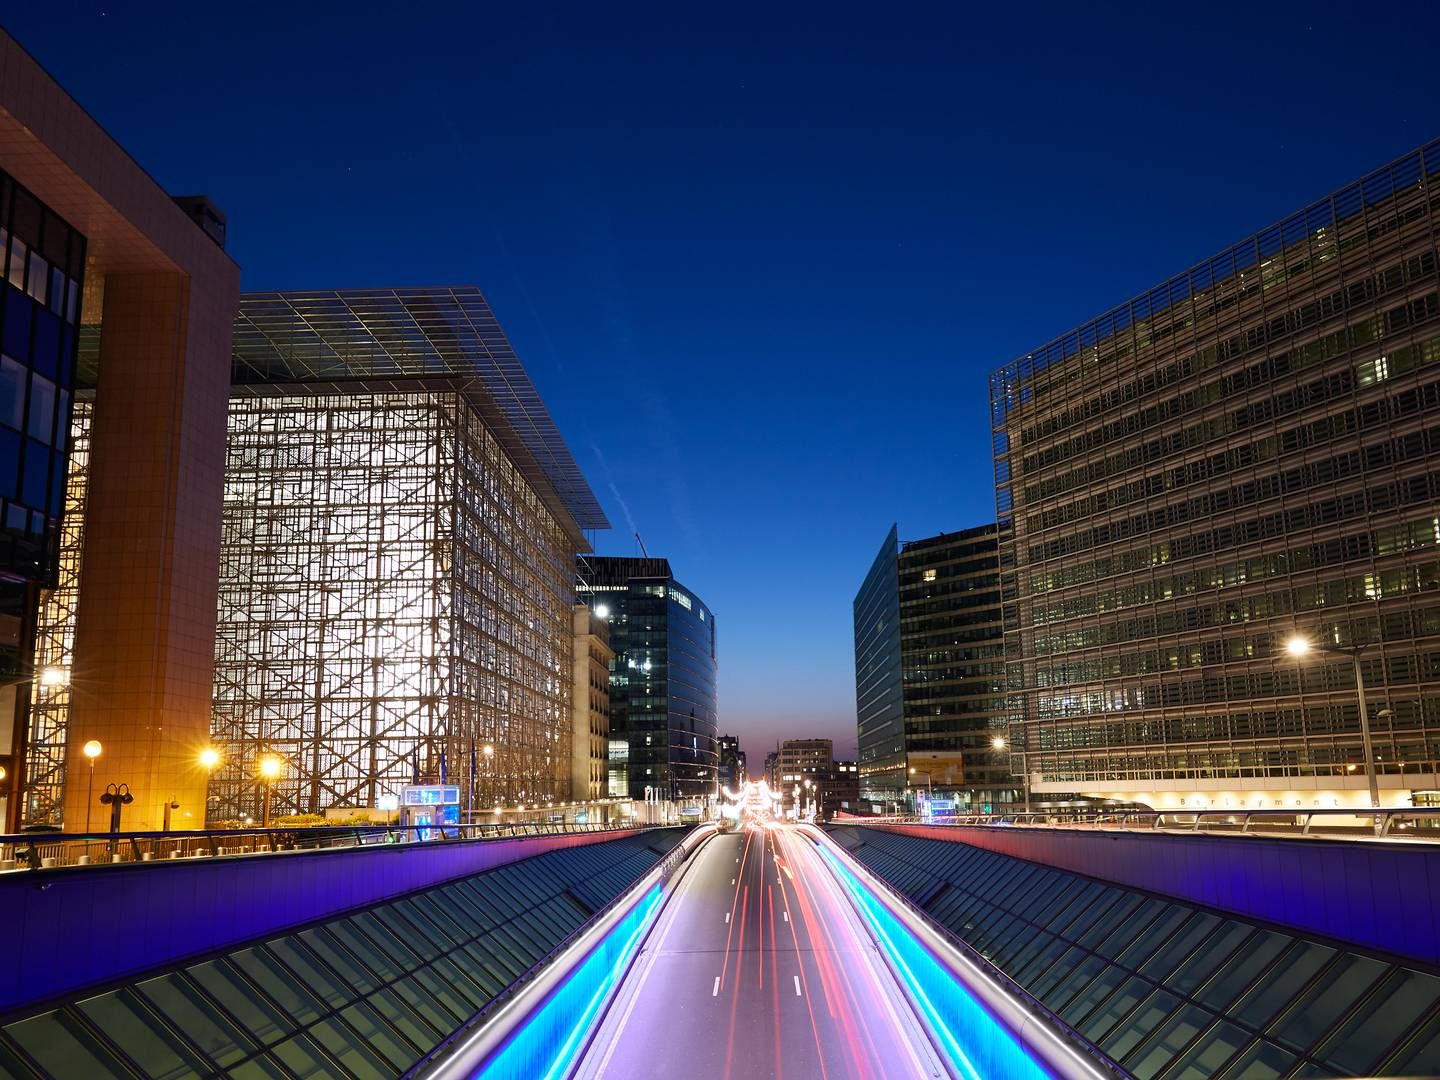 Wo geht die Reise hin? Nachtaufnahme der EU-Gebäude in Brüssel - links zu sehen das Europahaus, Sitz des Rates der Europäischen Union. | Foto: picture alliance / Caro | Ruffer